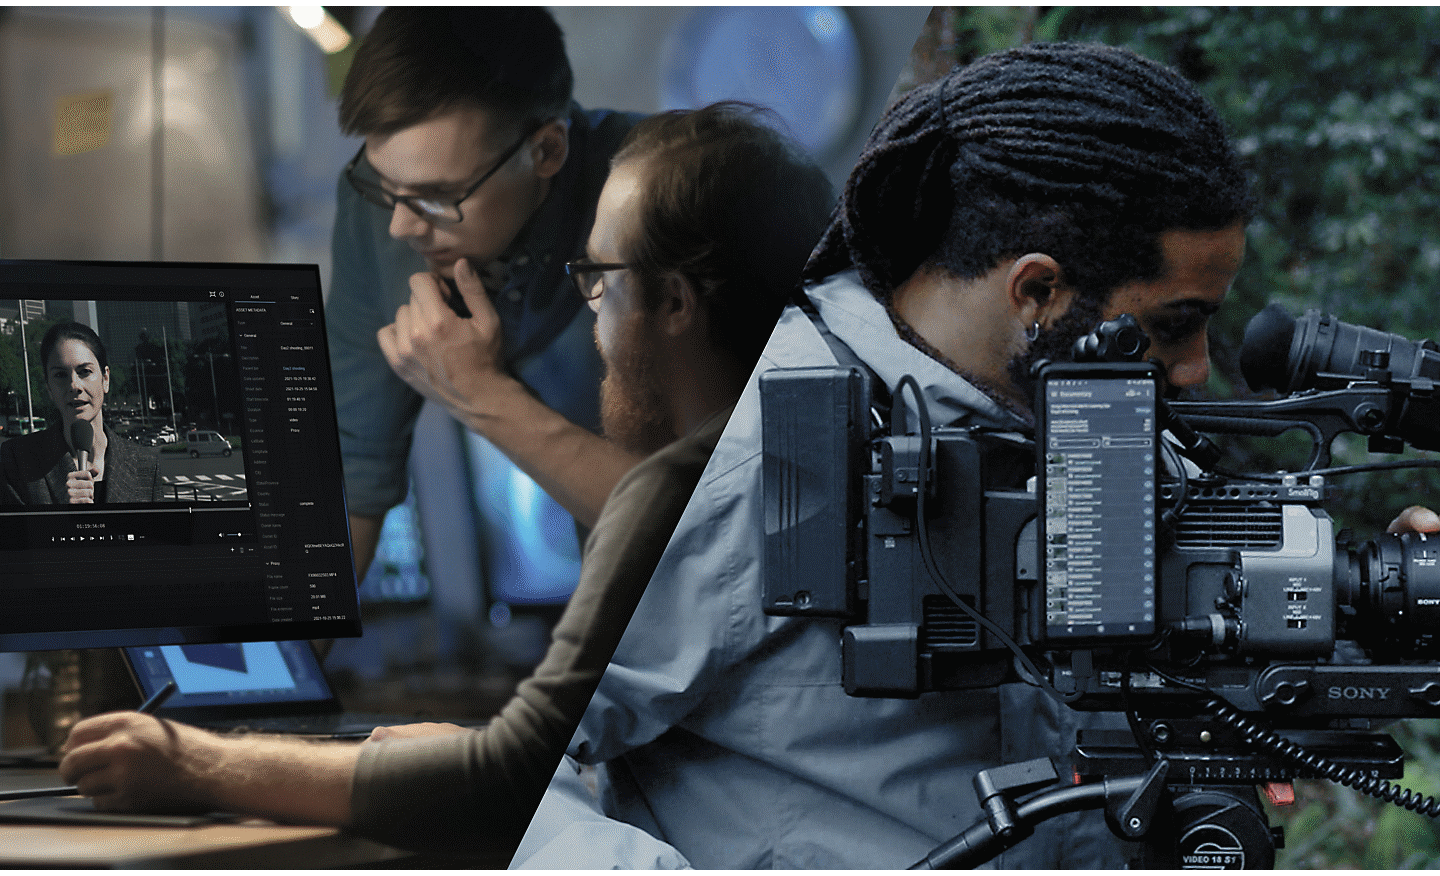 Une équipe de tournage composée de trois personnes se tient debout dans une zone boisée. Un homme au centre de l'image règle une caméra de cinéma Sony connectée au Cloud via un smartphone Xperia.